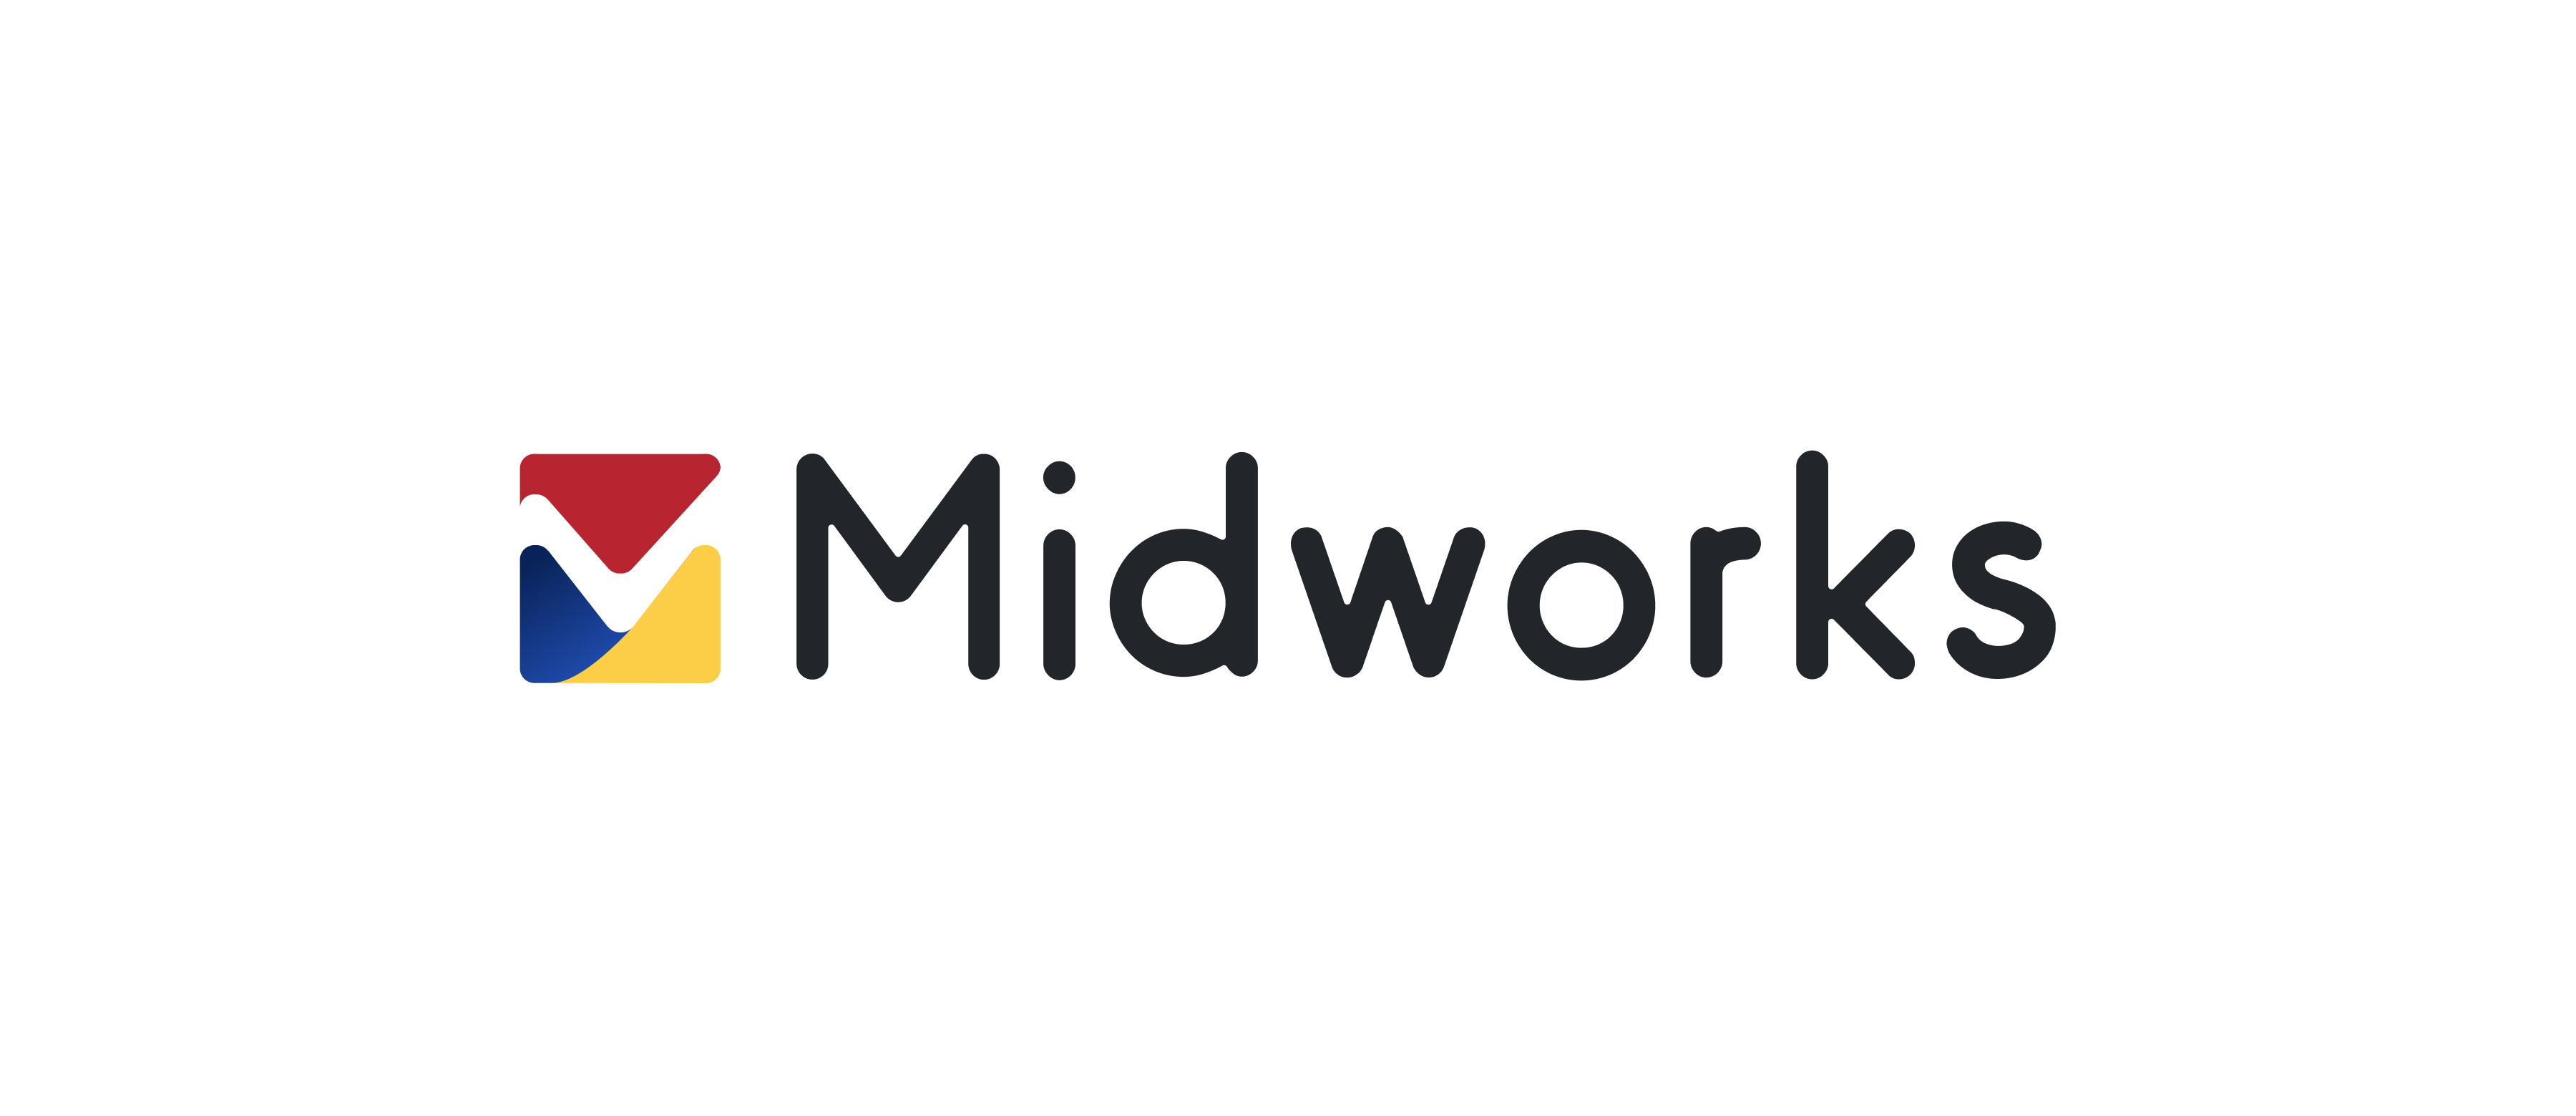 株式会社Branding Engineerの運営するMidworksにJiteraを掲載いただきました